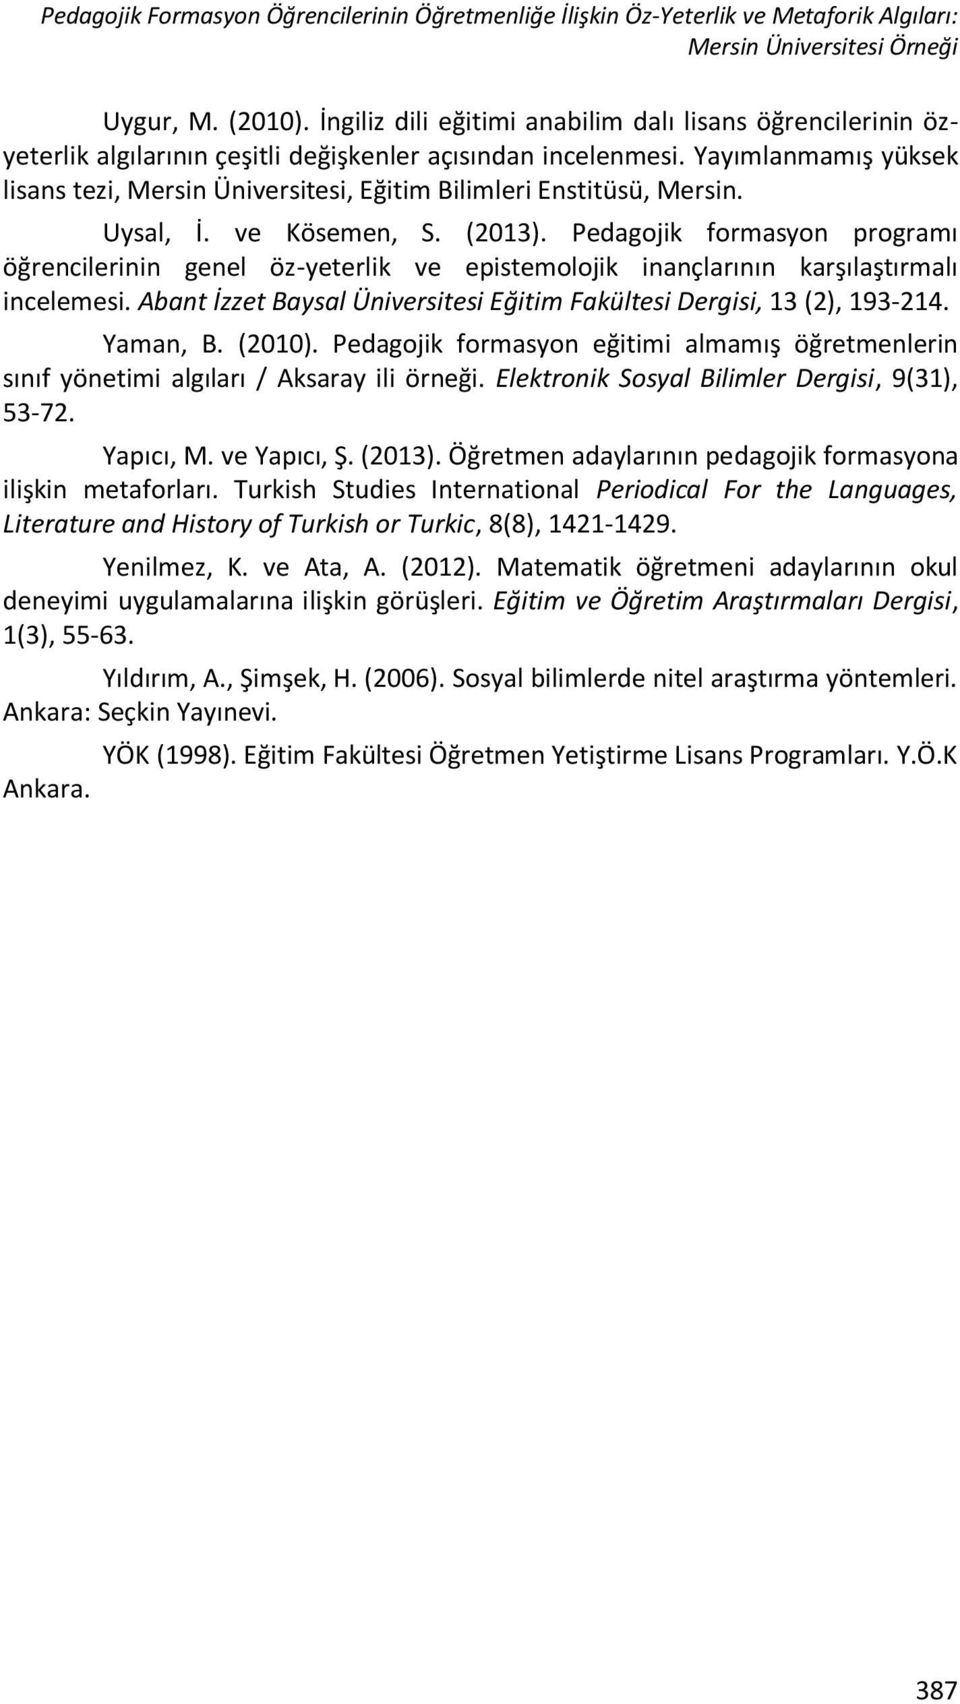 Yayımlanmamış yüksek lisans tezi, Mersin Üniversitesi, Eğitim Bilimleri Enstitüsü, Mersin. Uysal, İ. ve Kösemen, S. (2013).